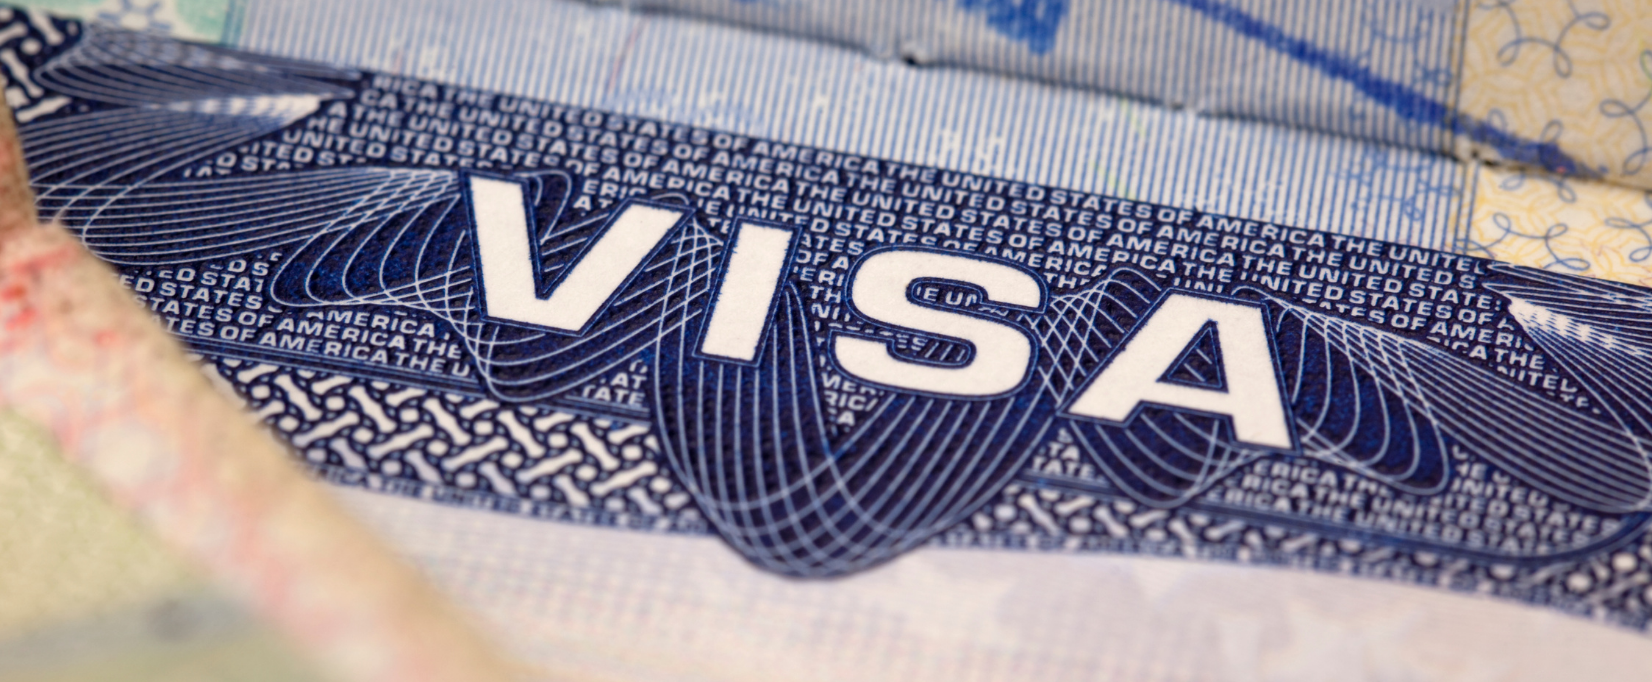 Dịch vụ gia hạn visa Mỹ trọn gói, uy tín - Tỷ lệ đậu cao